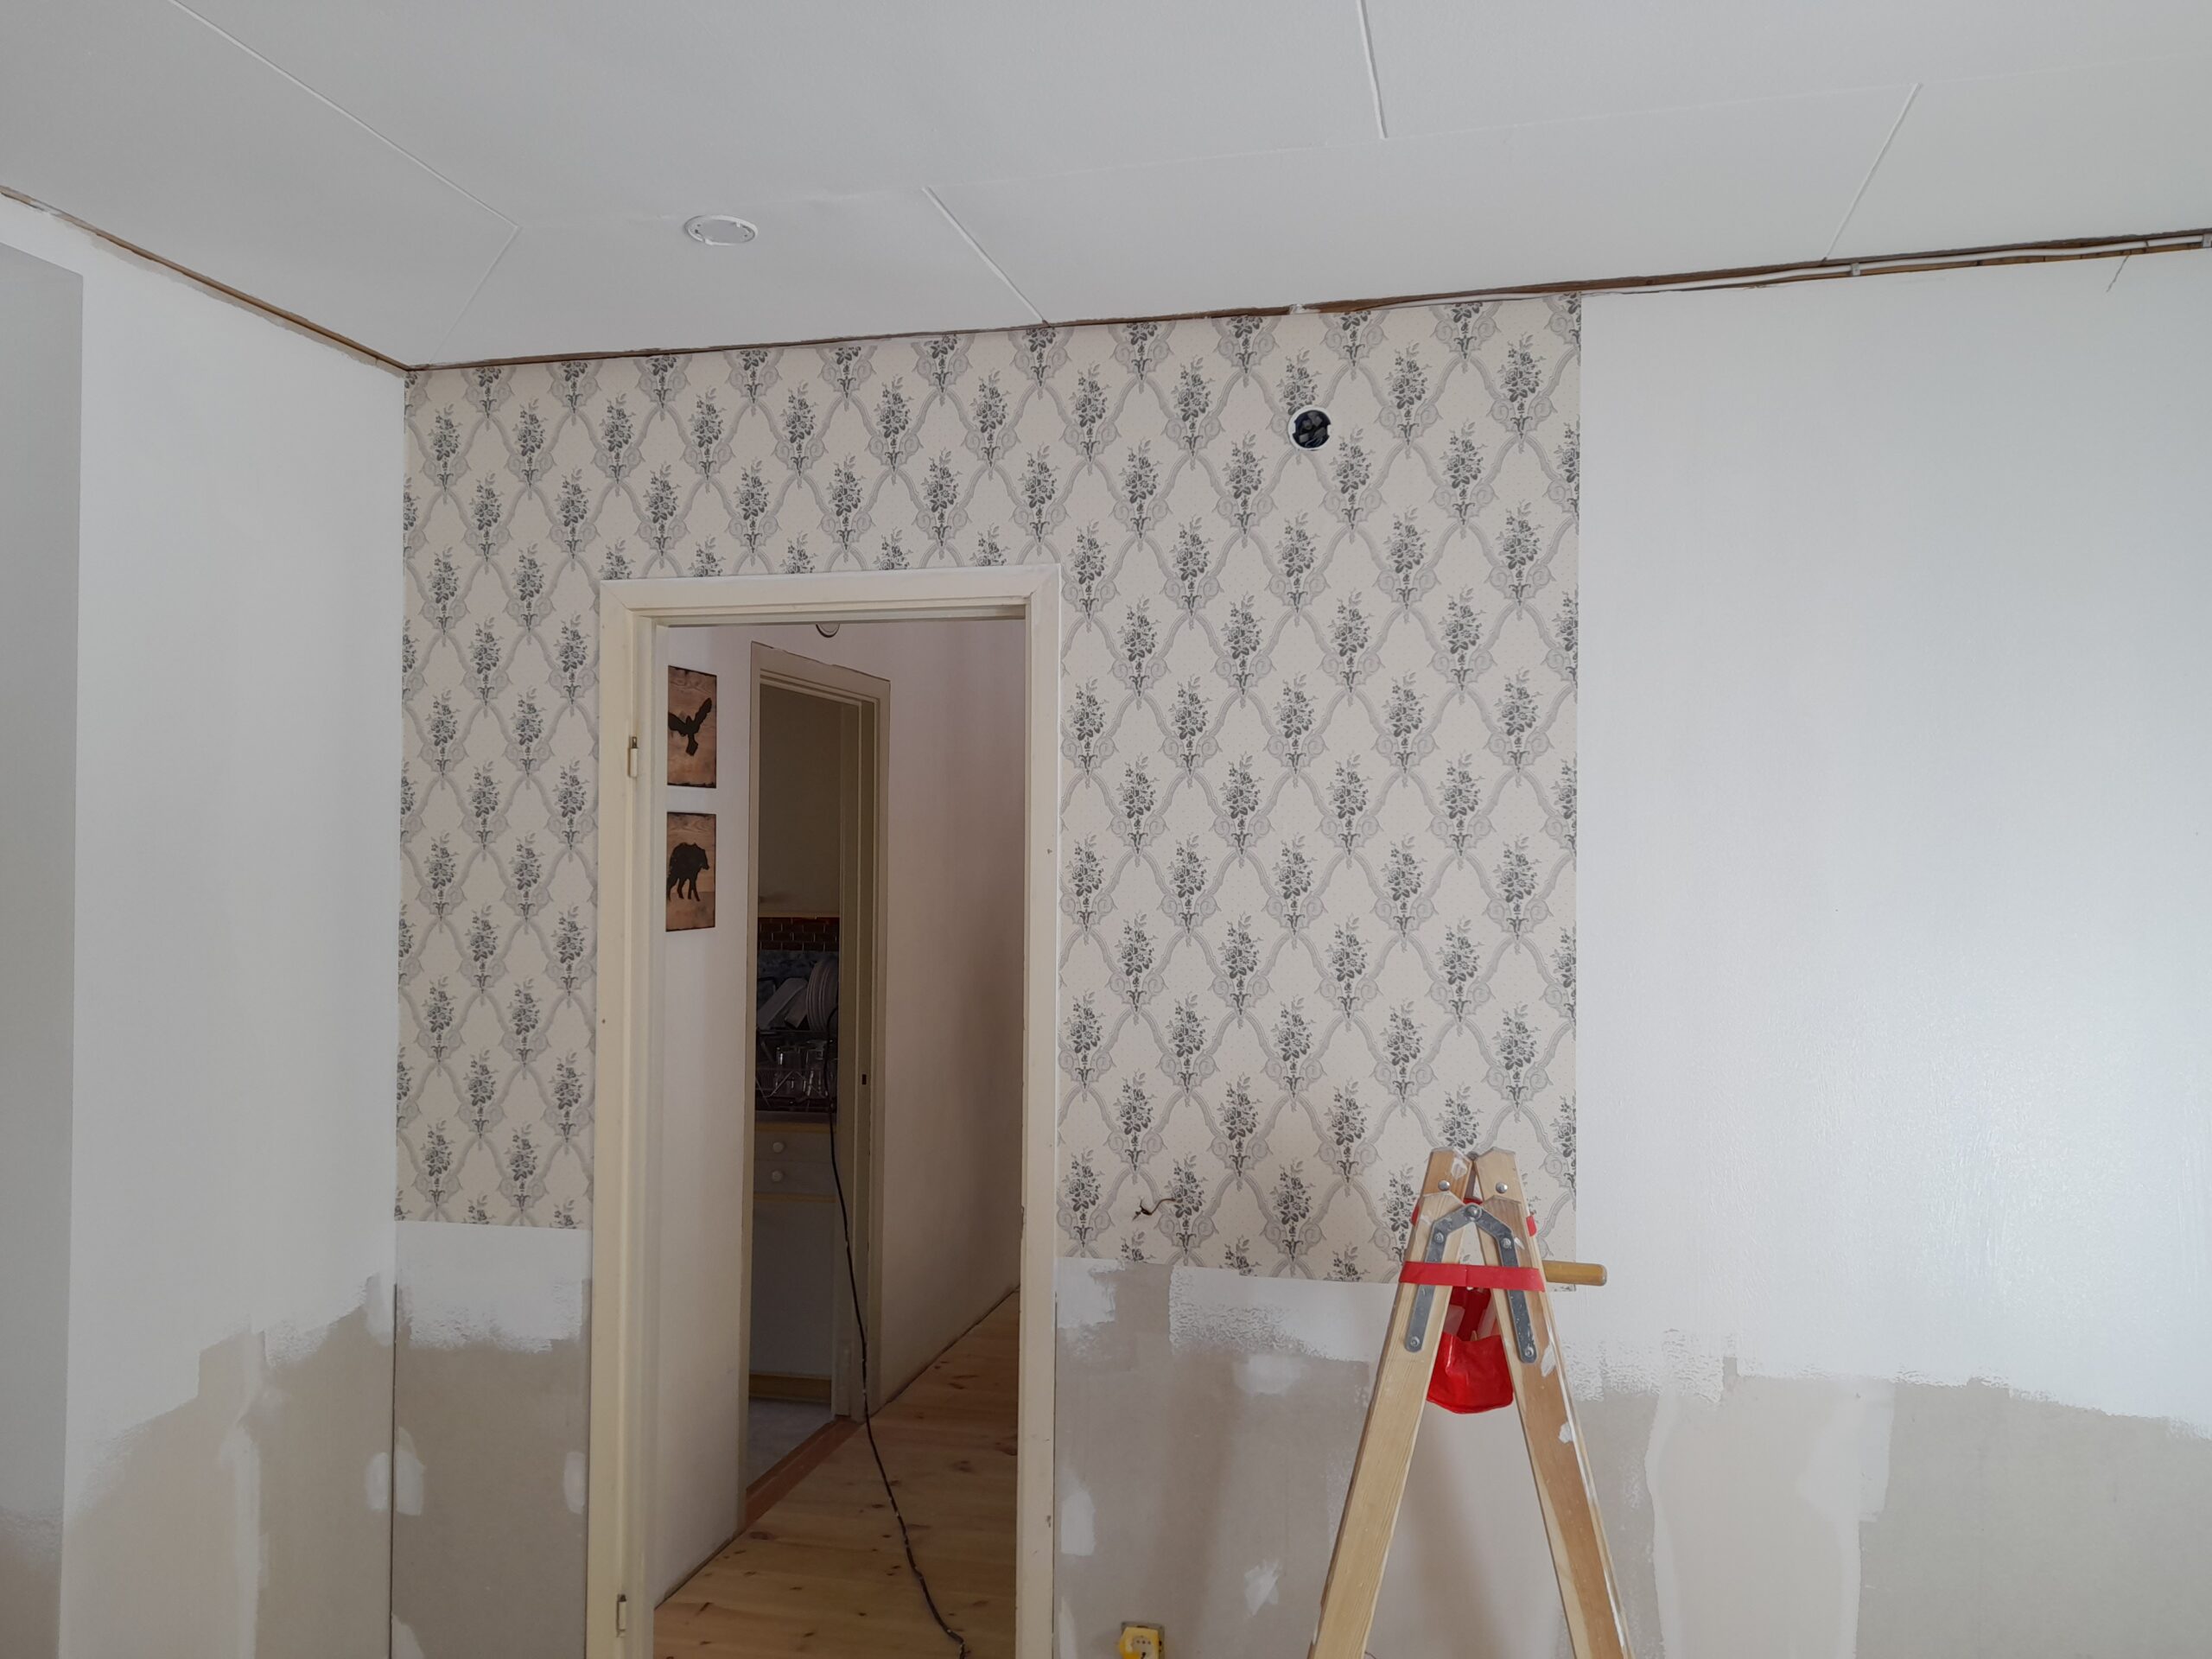 wallpapering-preparation-osbytsm